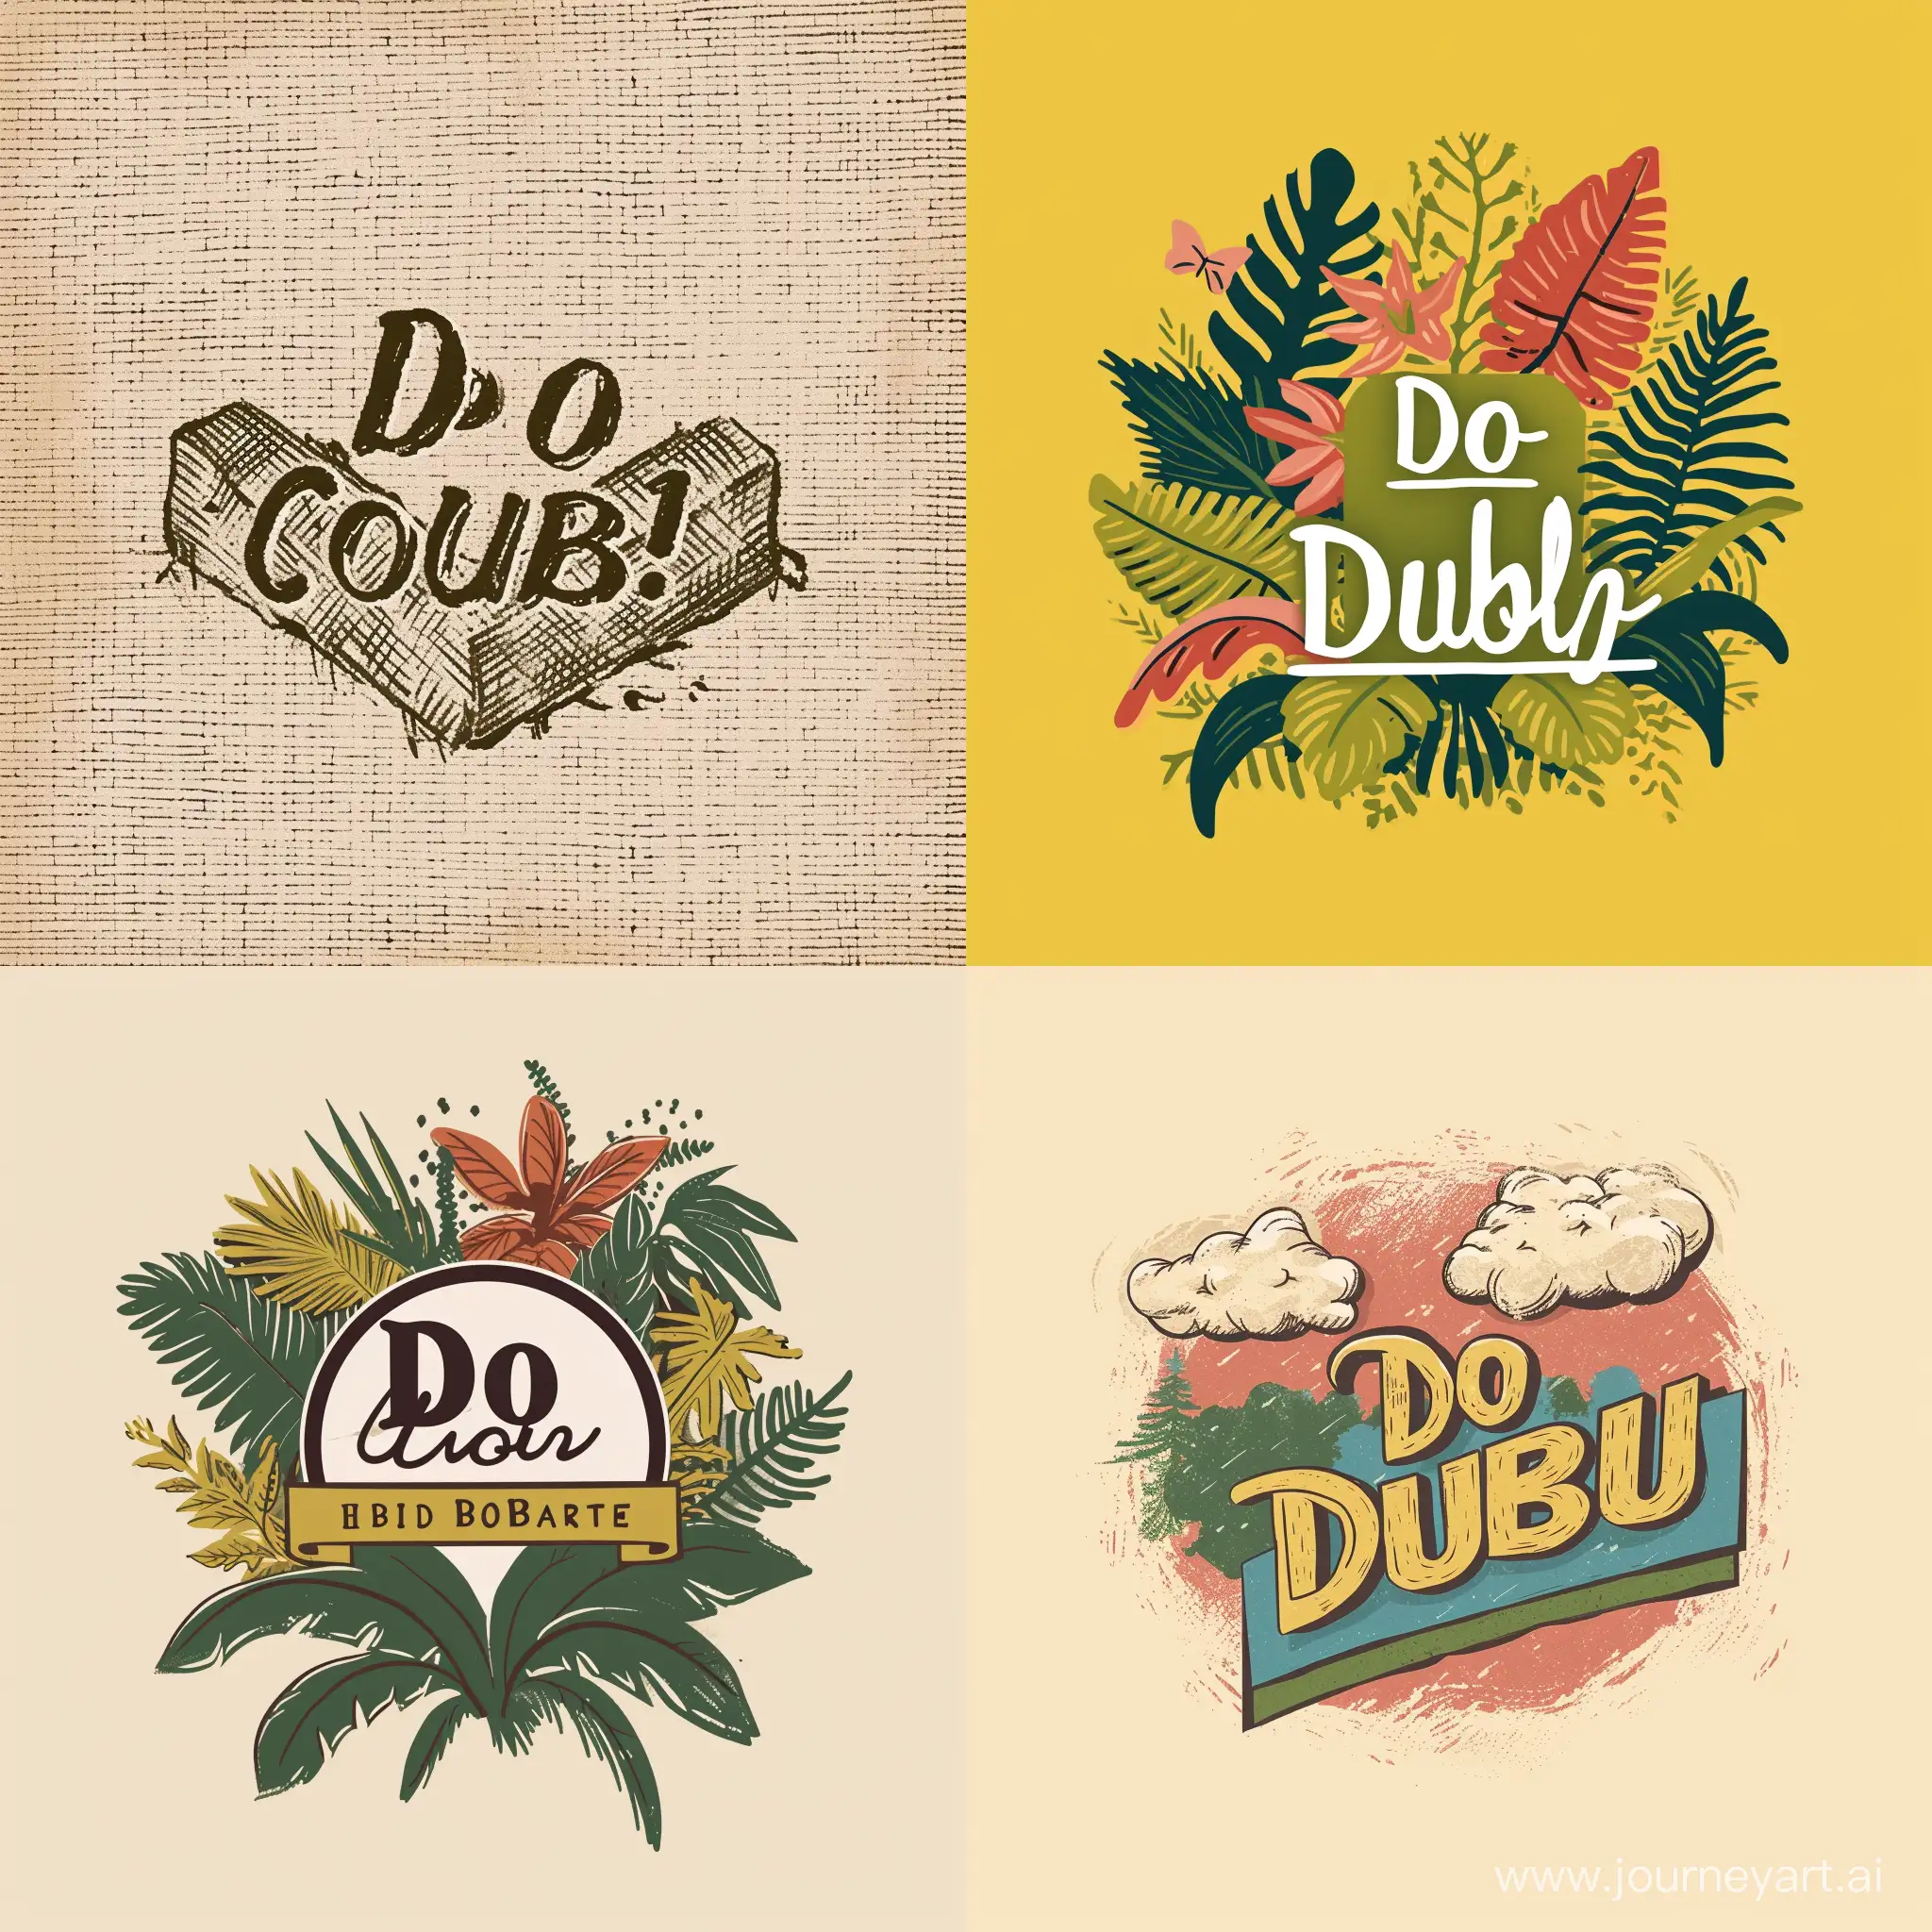 create brand logo for "Do dump" in handicraft aesthetic